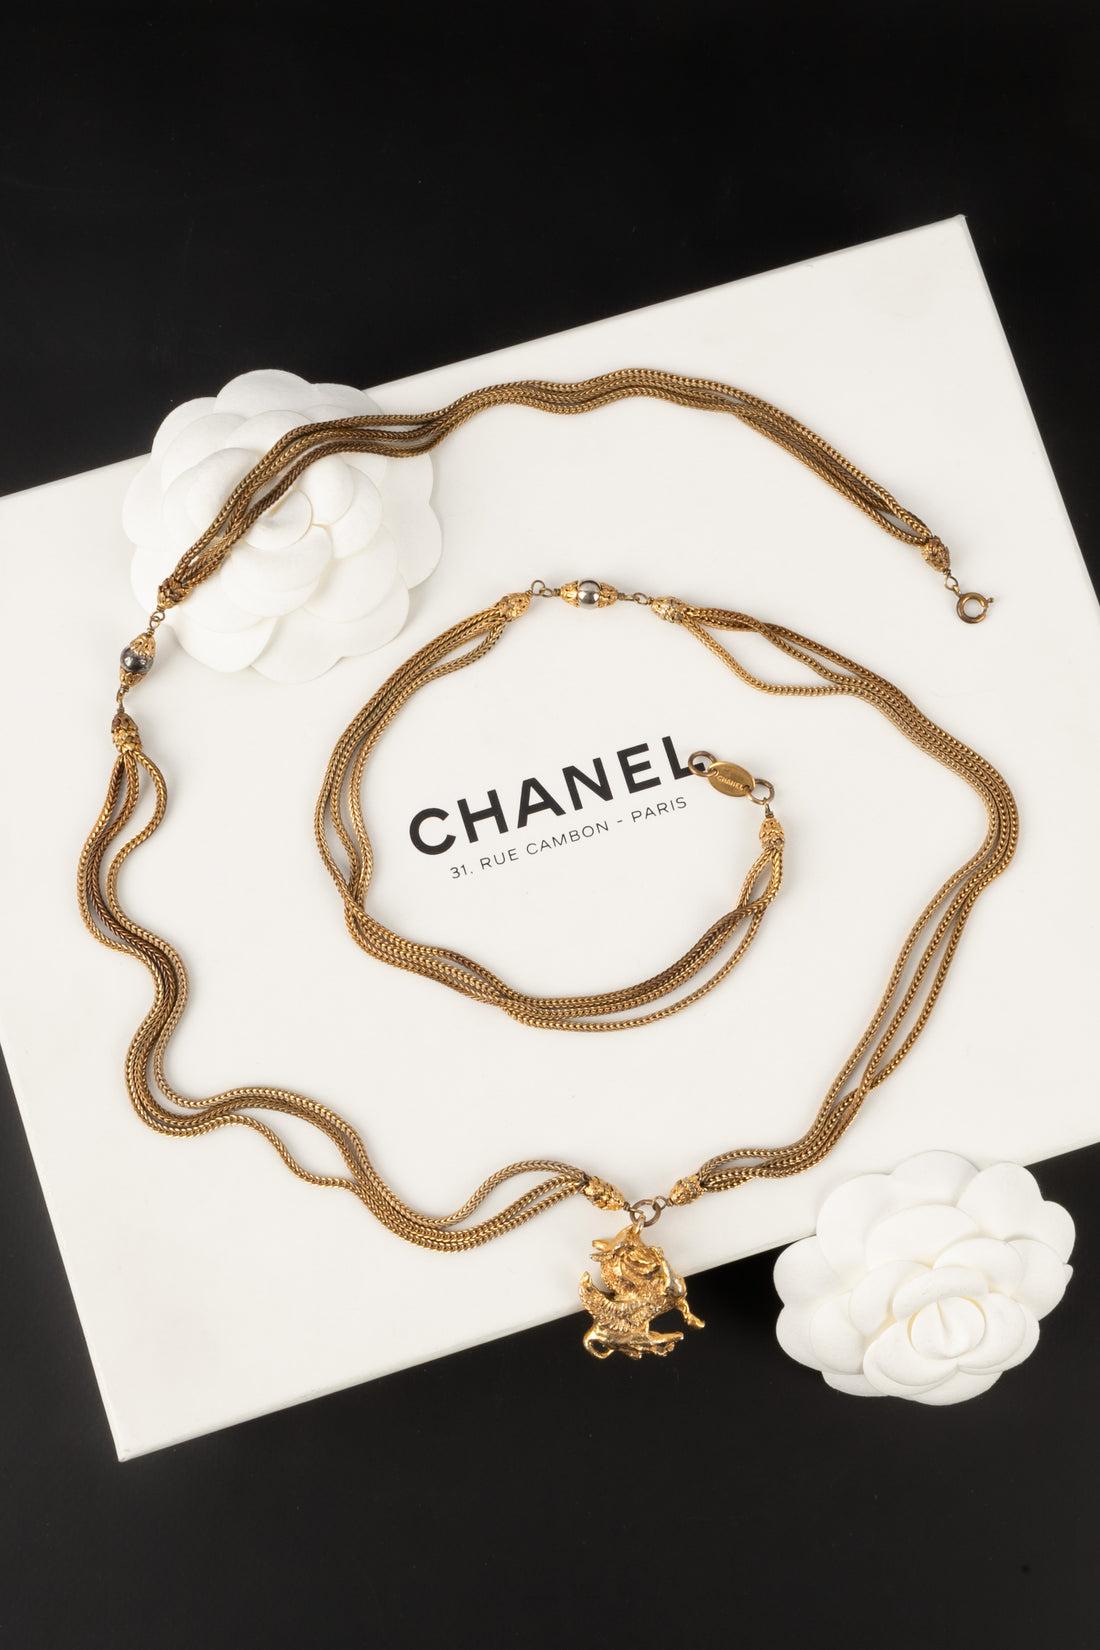 Chanel - (Made in France) Haute-Couture-Halskette aus goldenem Metall mit einem Anhänger, der einen Pegasus darstellt. Schmuck aus der Zeit von Coco Chanel.

Zusätzliche Informationen:
Zustand: Sehr guter Zustand
Abmessungen: Länge: 96 cm

Sellers